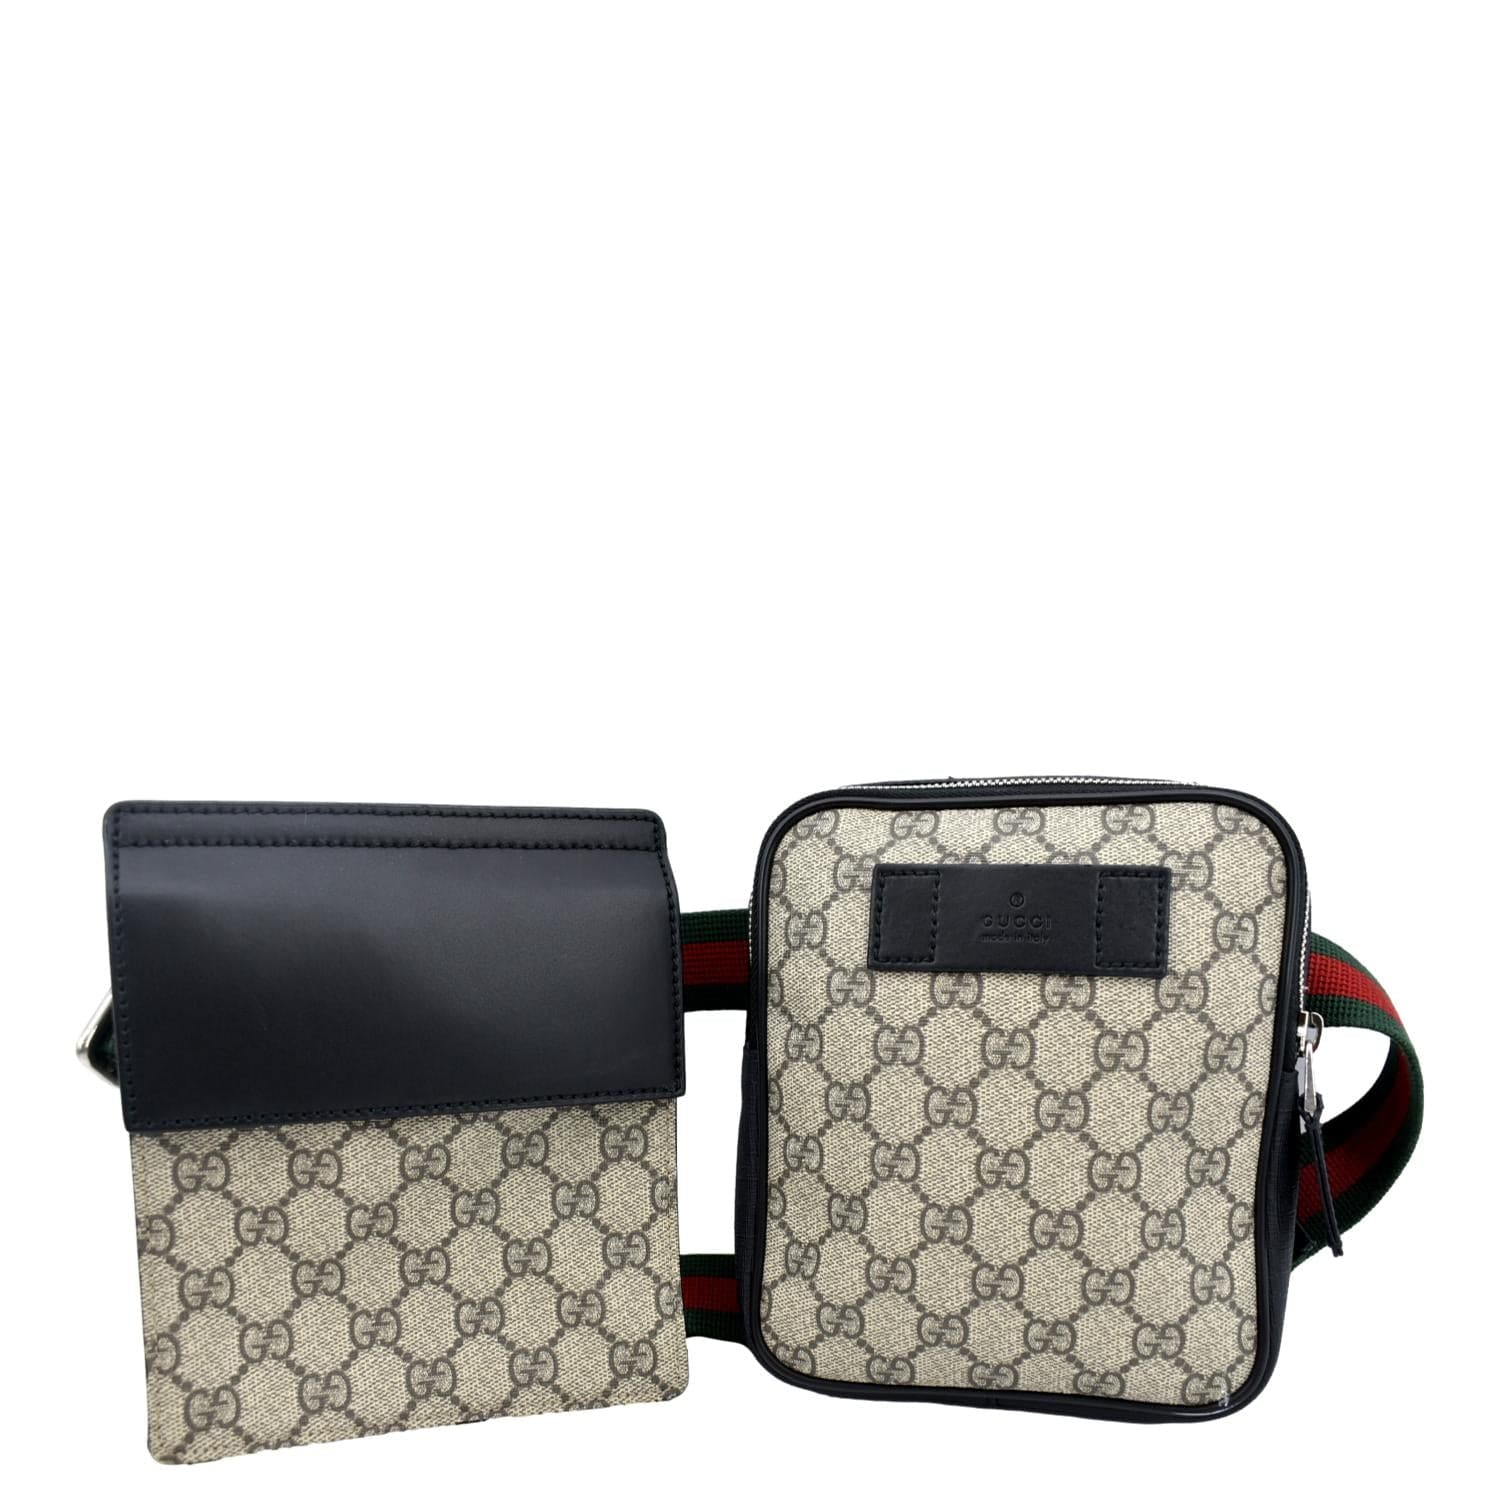 Black / Grey GG Supreme Belt Bag